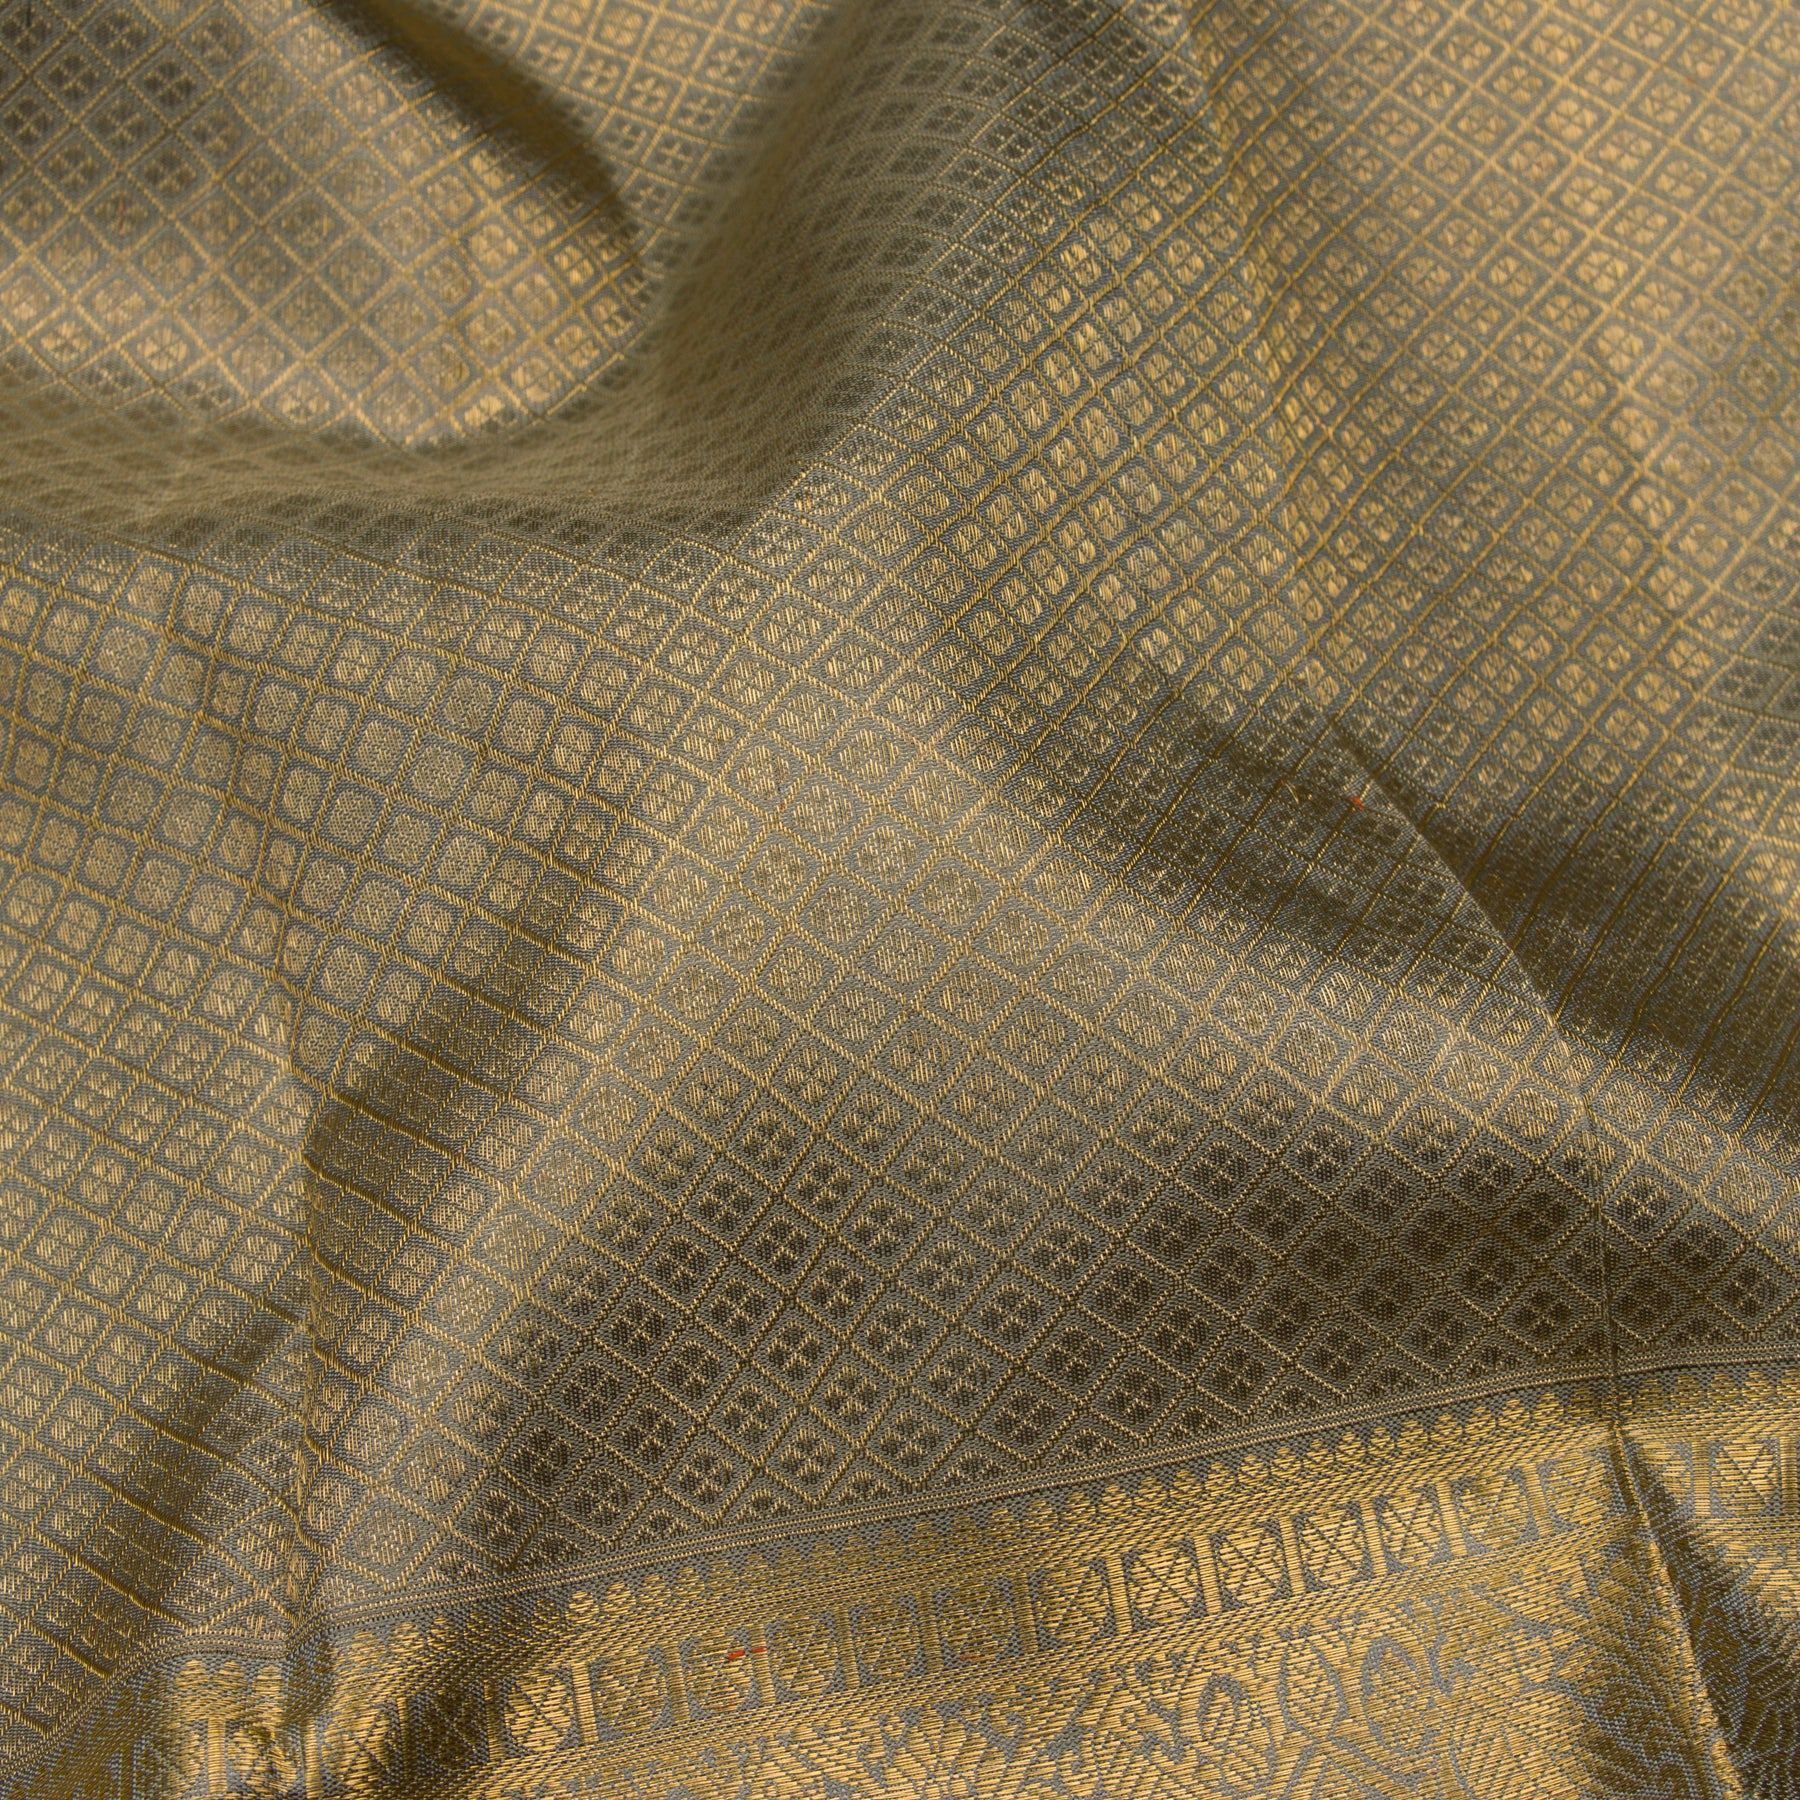 Kanakavalli Kanjivaram Silk Sari 23-110-HS001-10003 - Fabric View